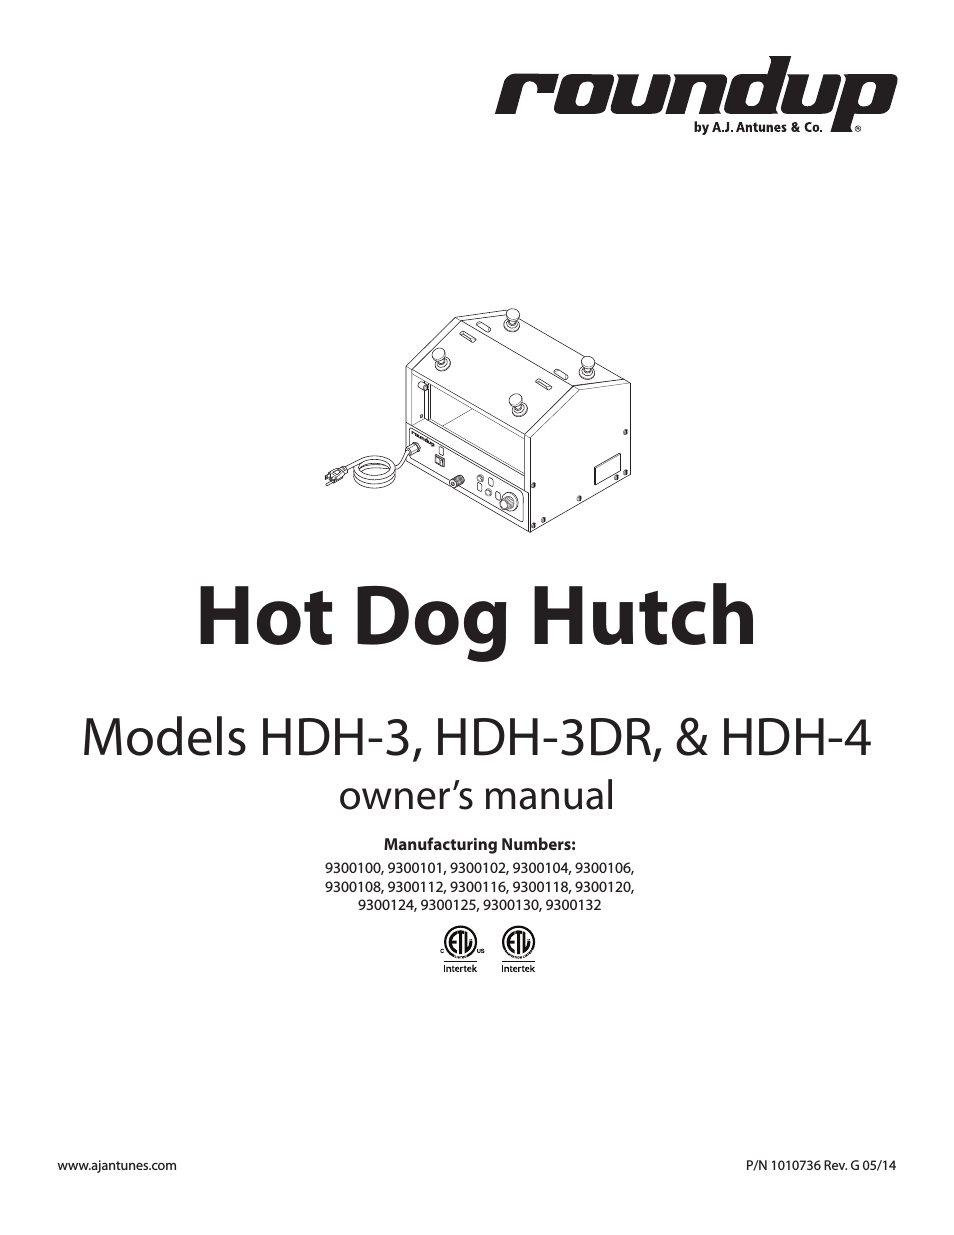 HDH-3 9300100